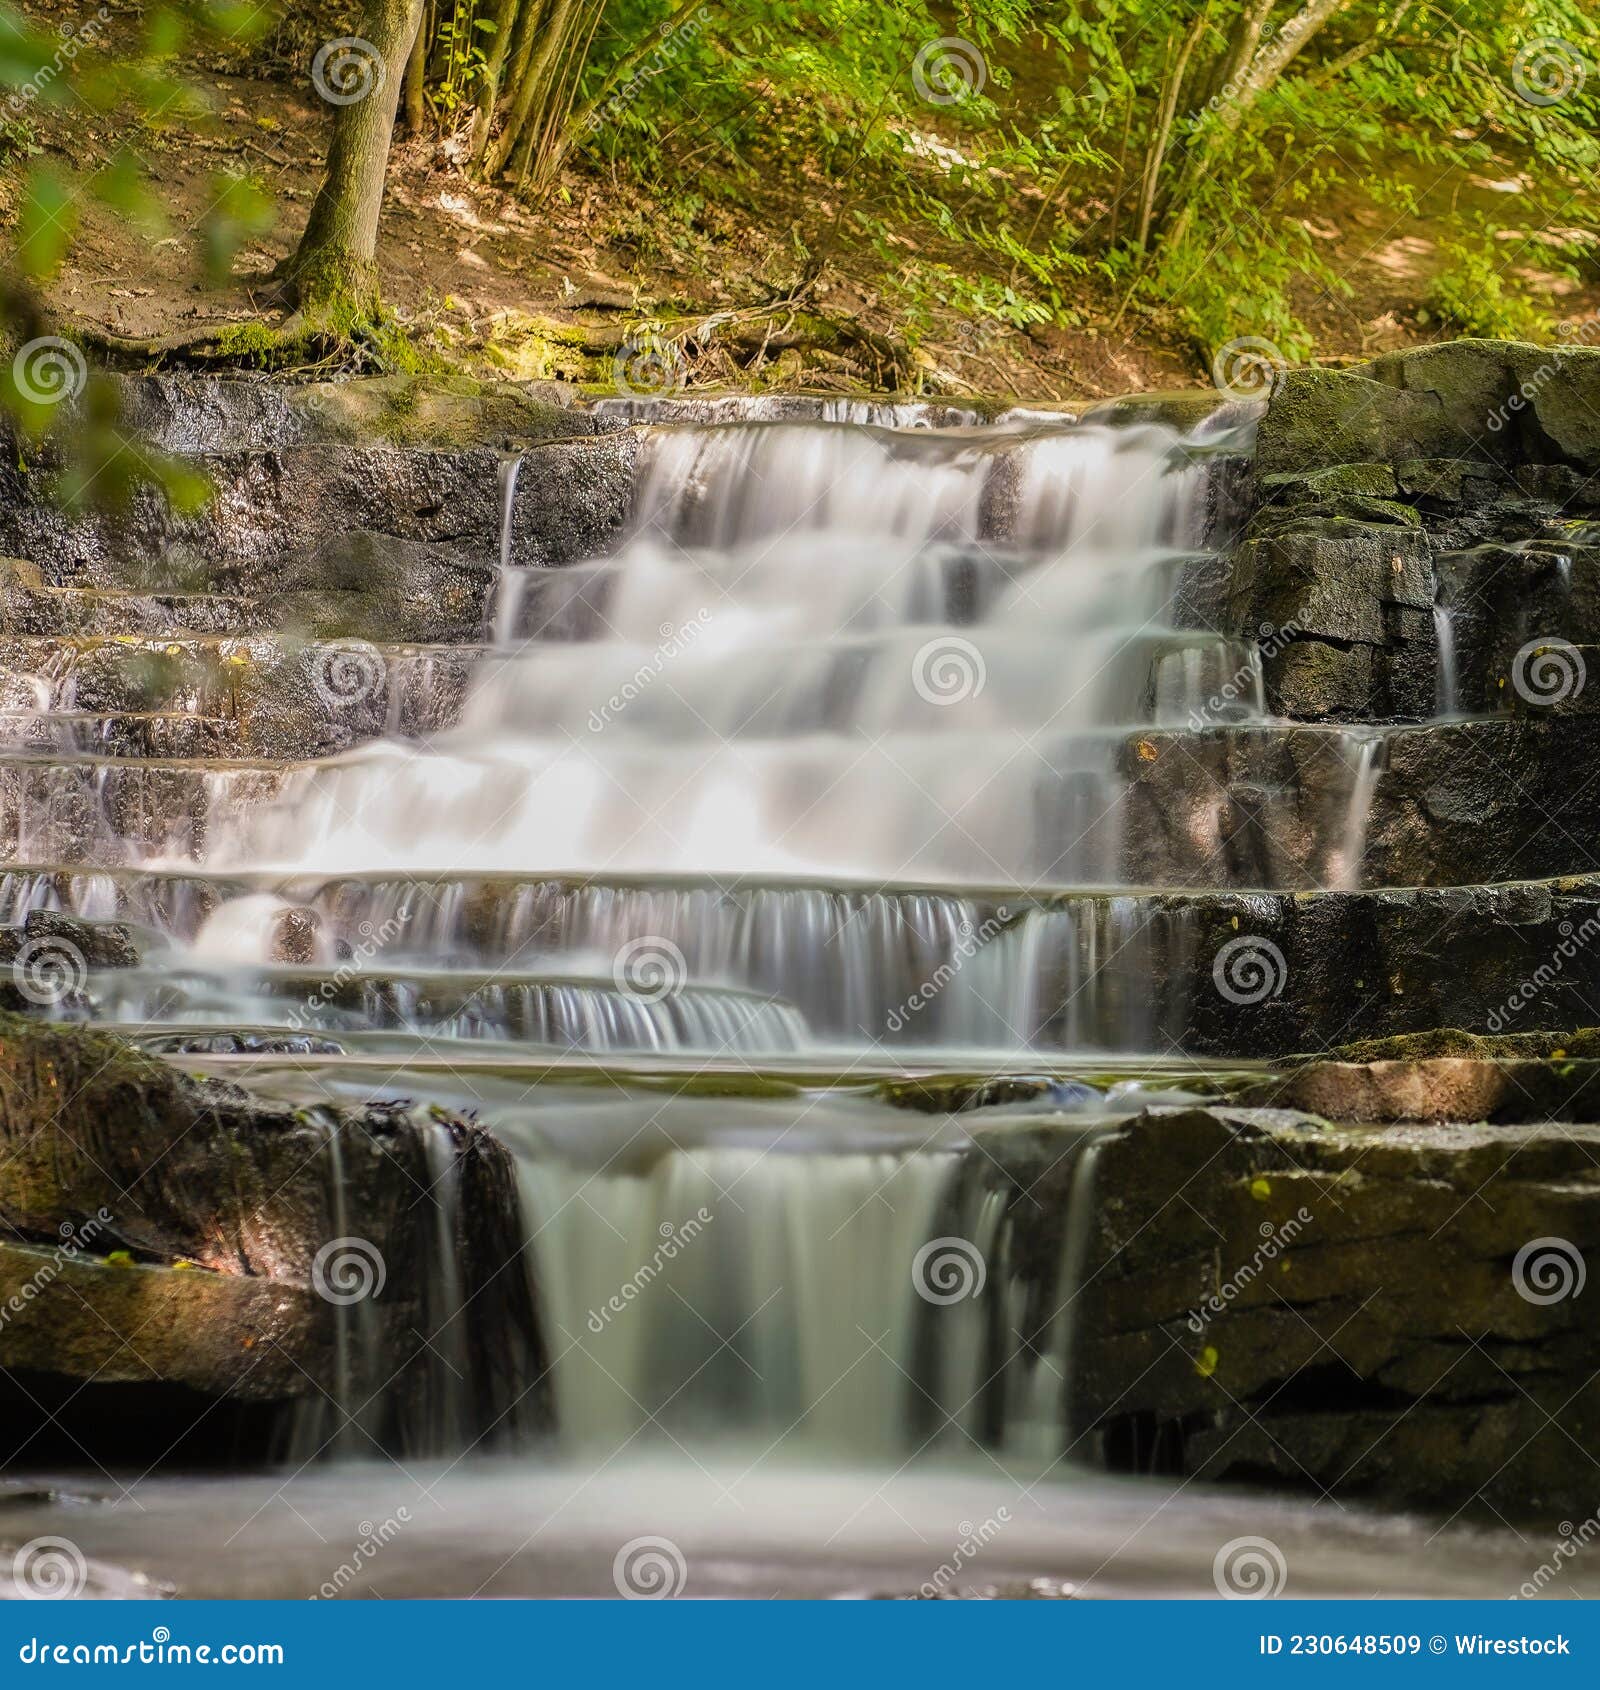 wonderous waterfall in rocks in a fall forest